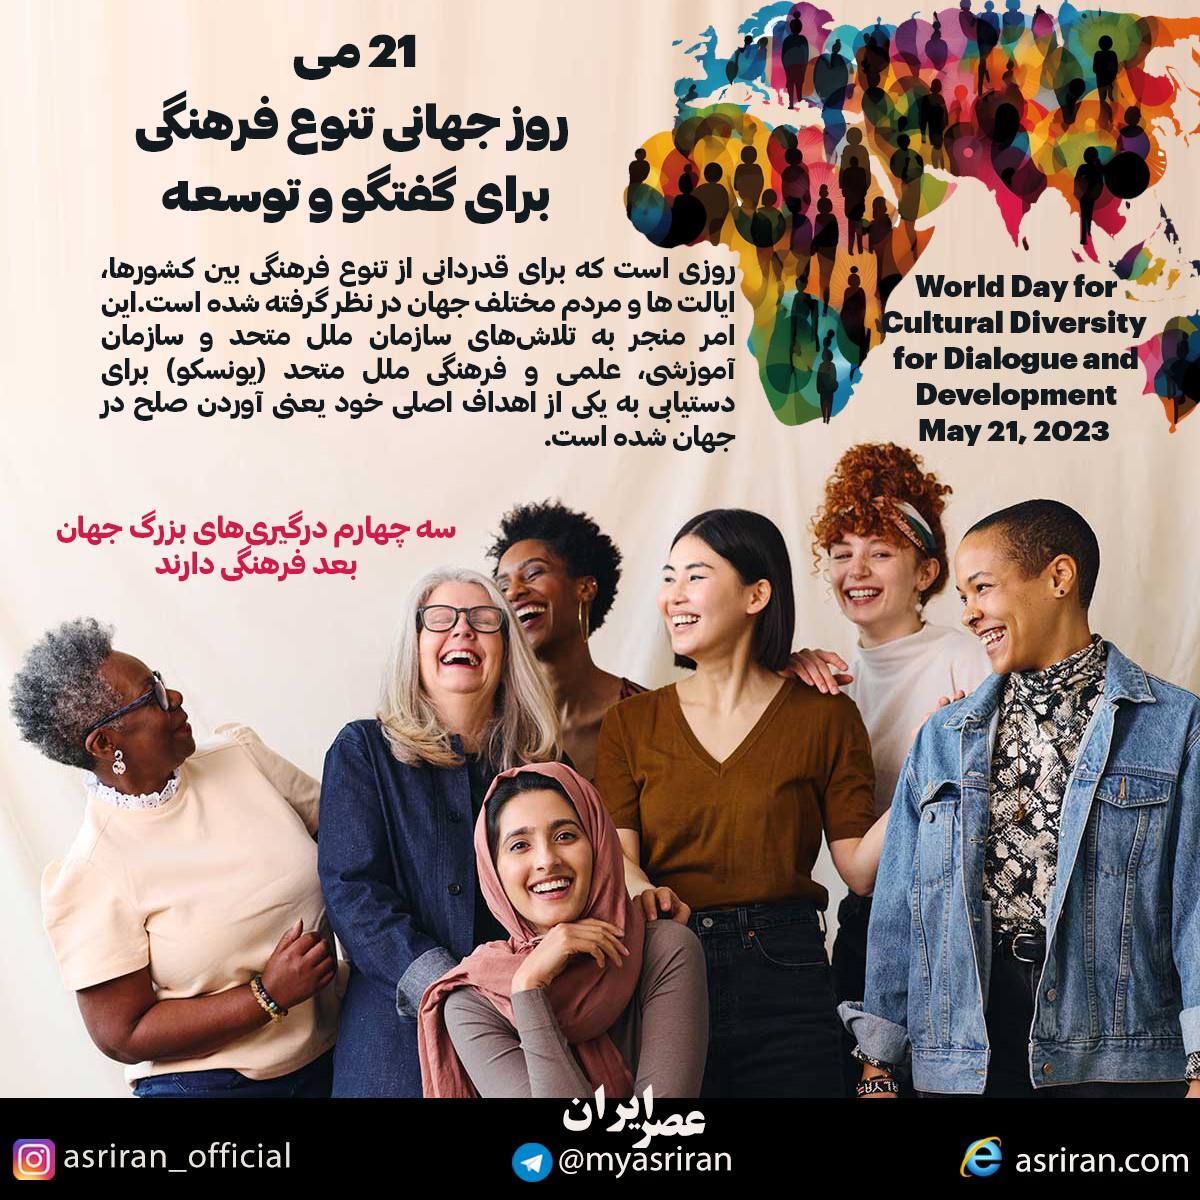 21 می، روز جهانی تنوع فرهنگی (اینفوگرافیک)